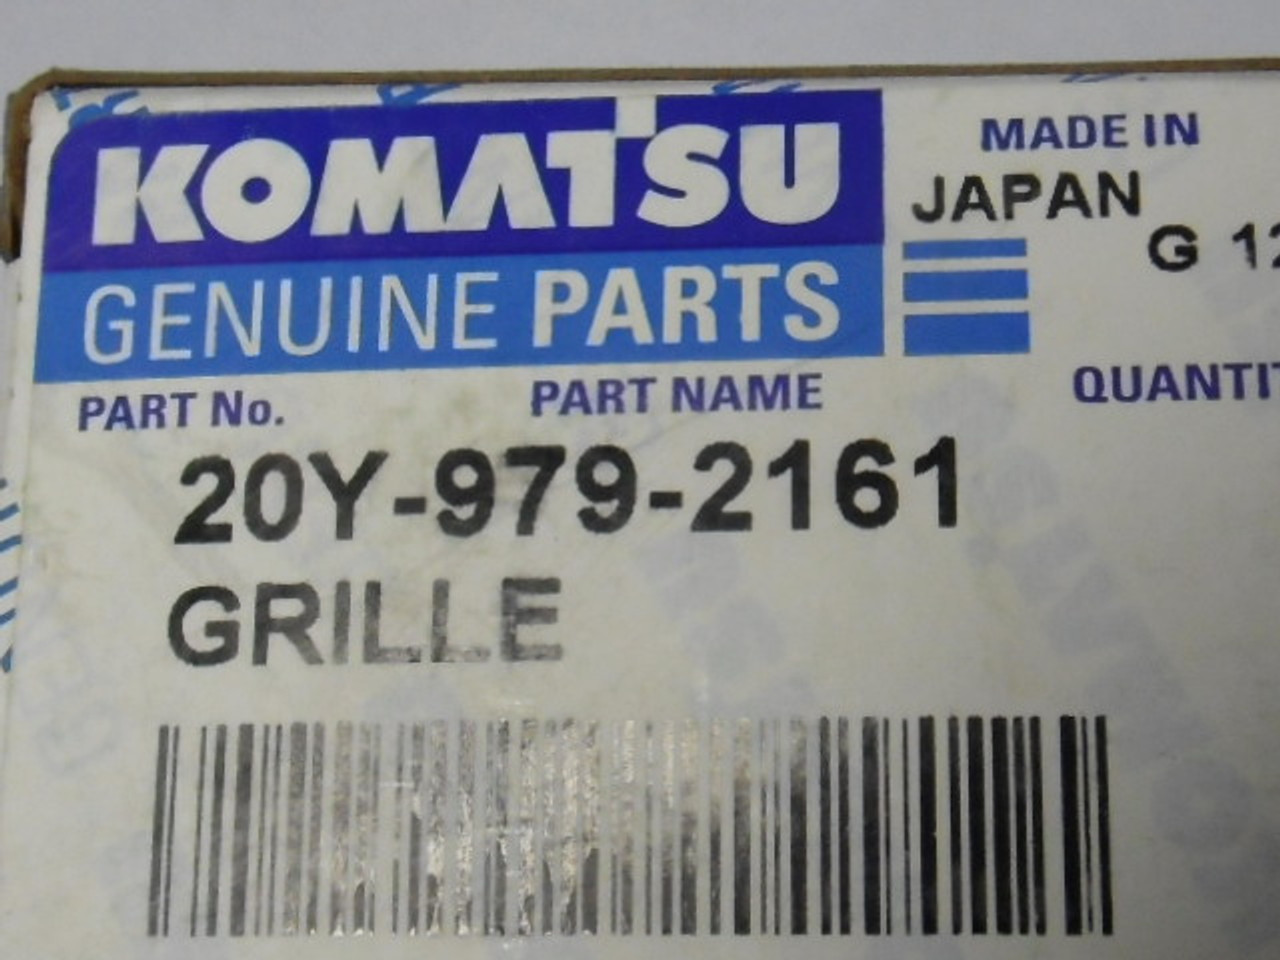 Komatsu Genuine Parts 20Y-979-2161 Grille ! NEW !